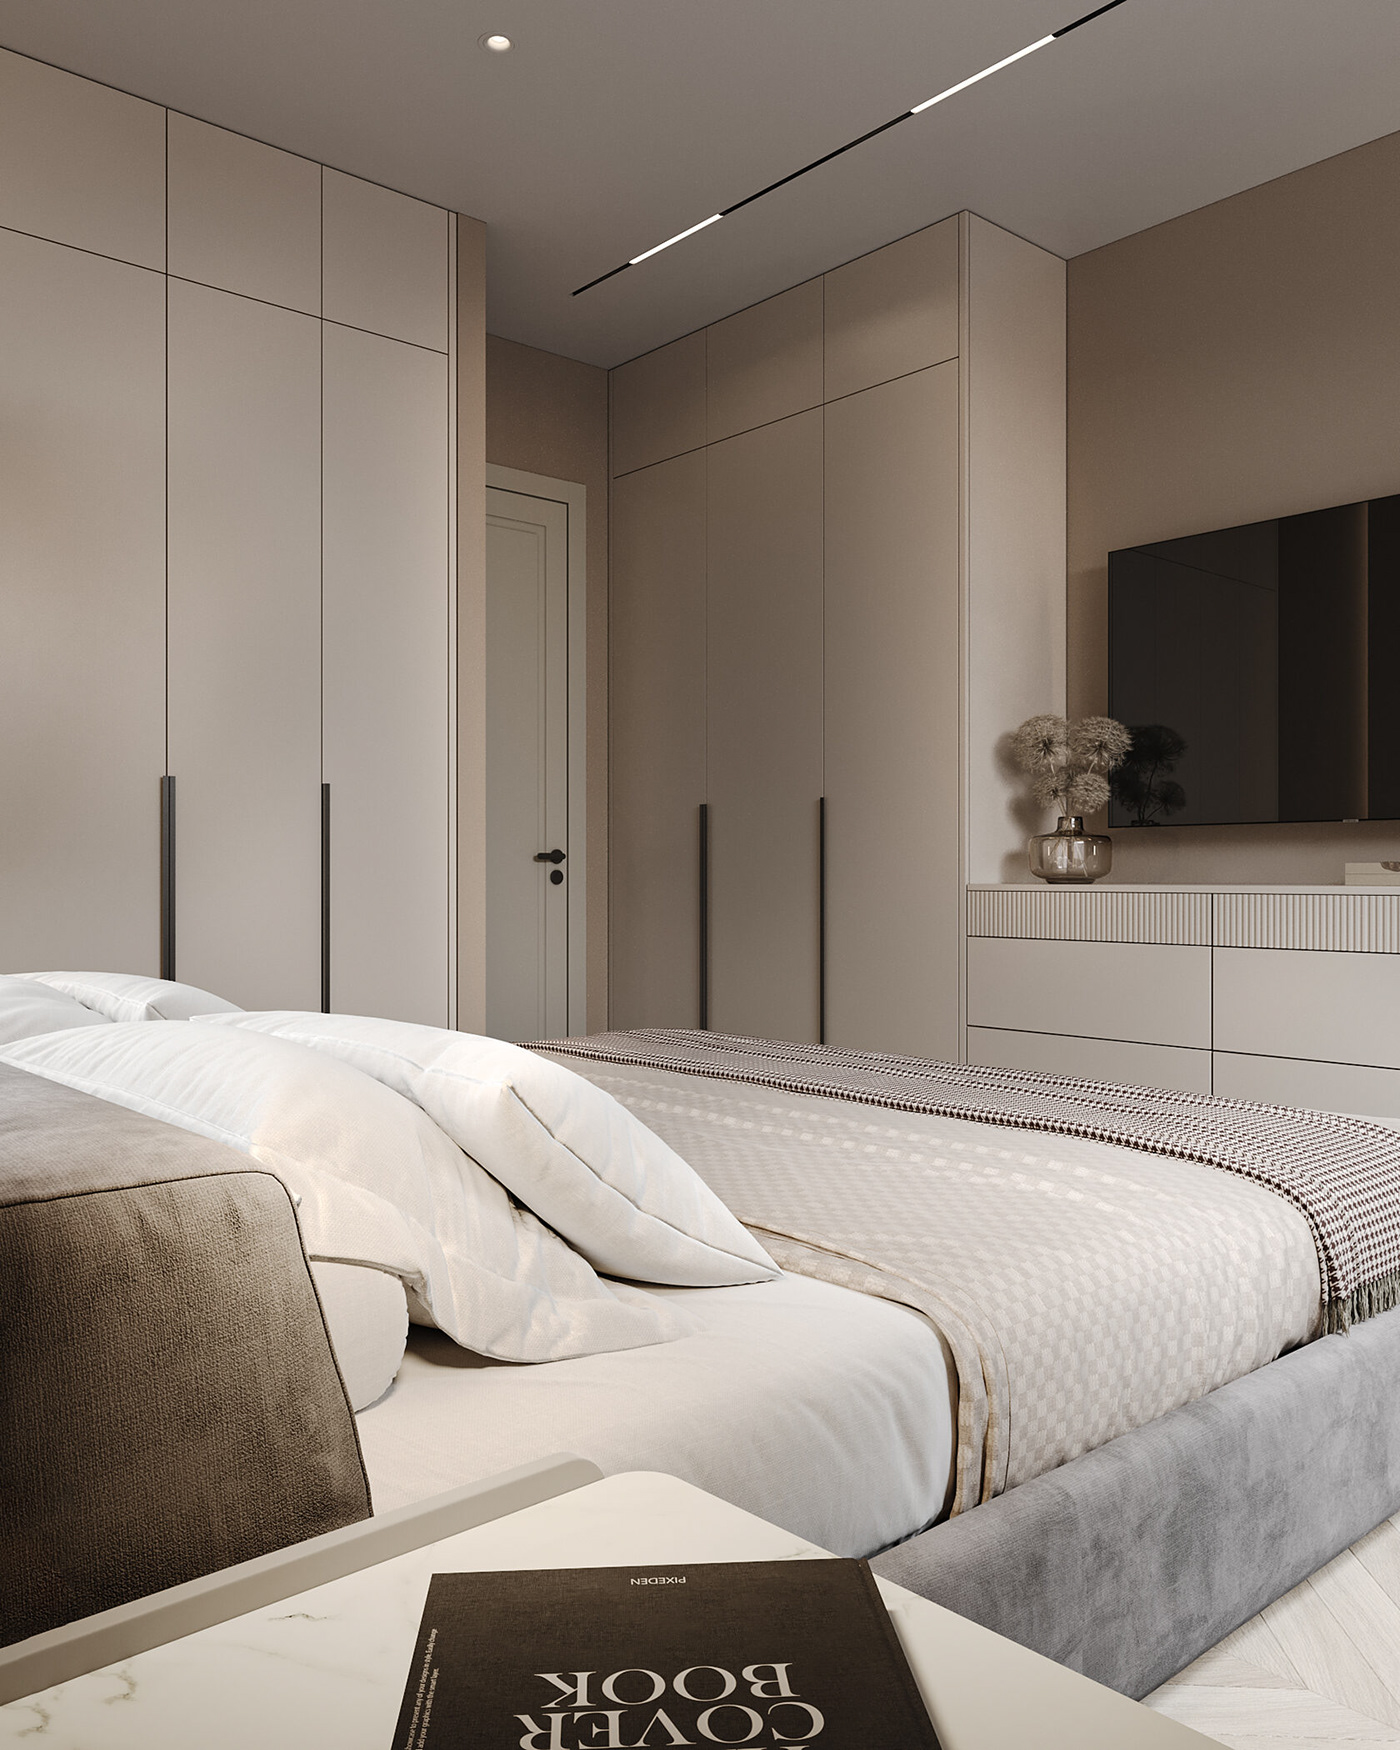 дизайн интерьера интерьер гостиная   спальня детская interior design  visualization 3D modern pink